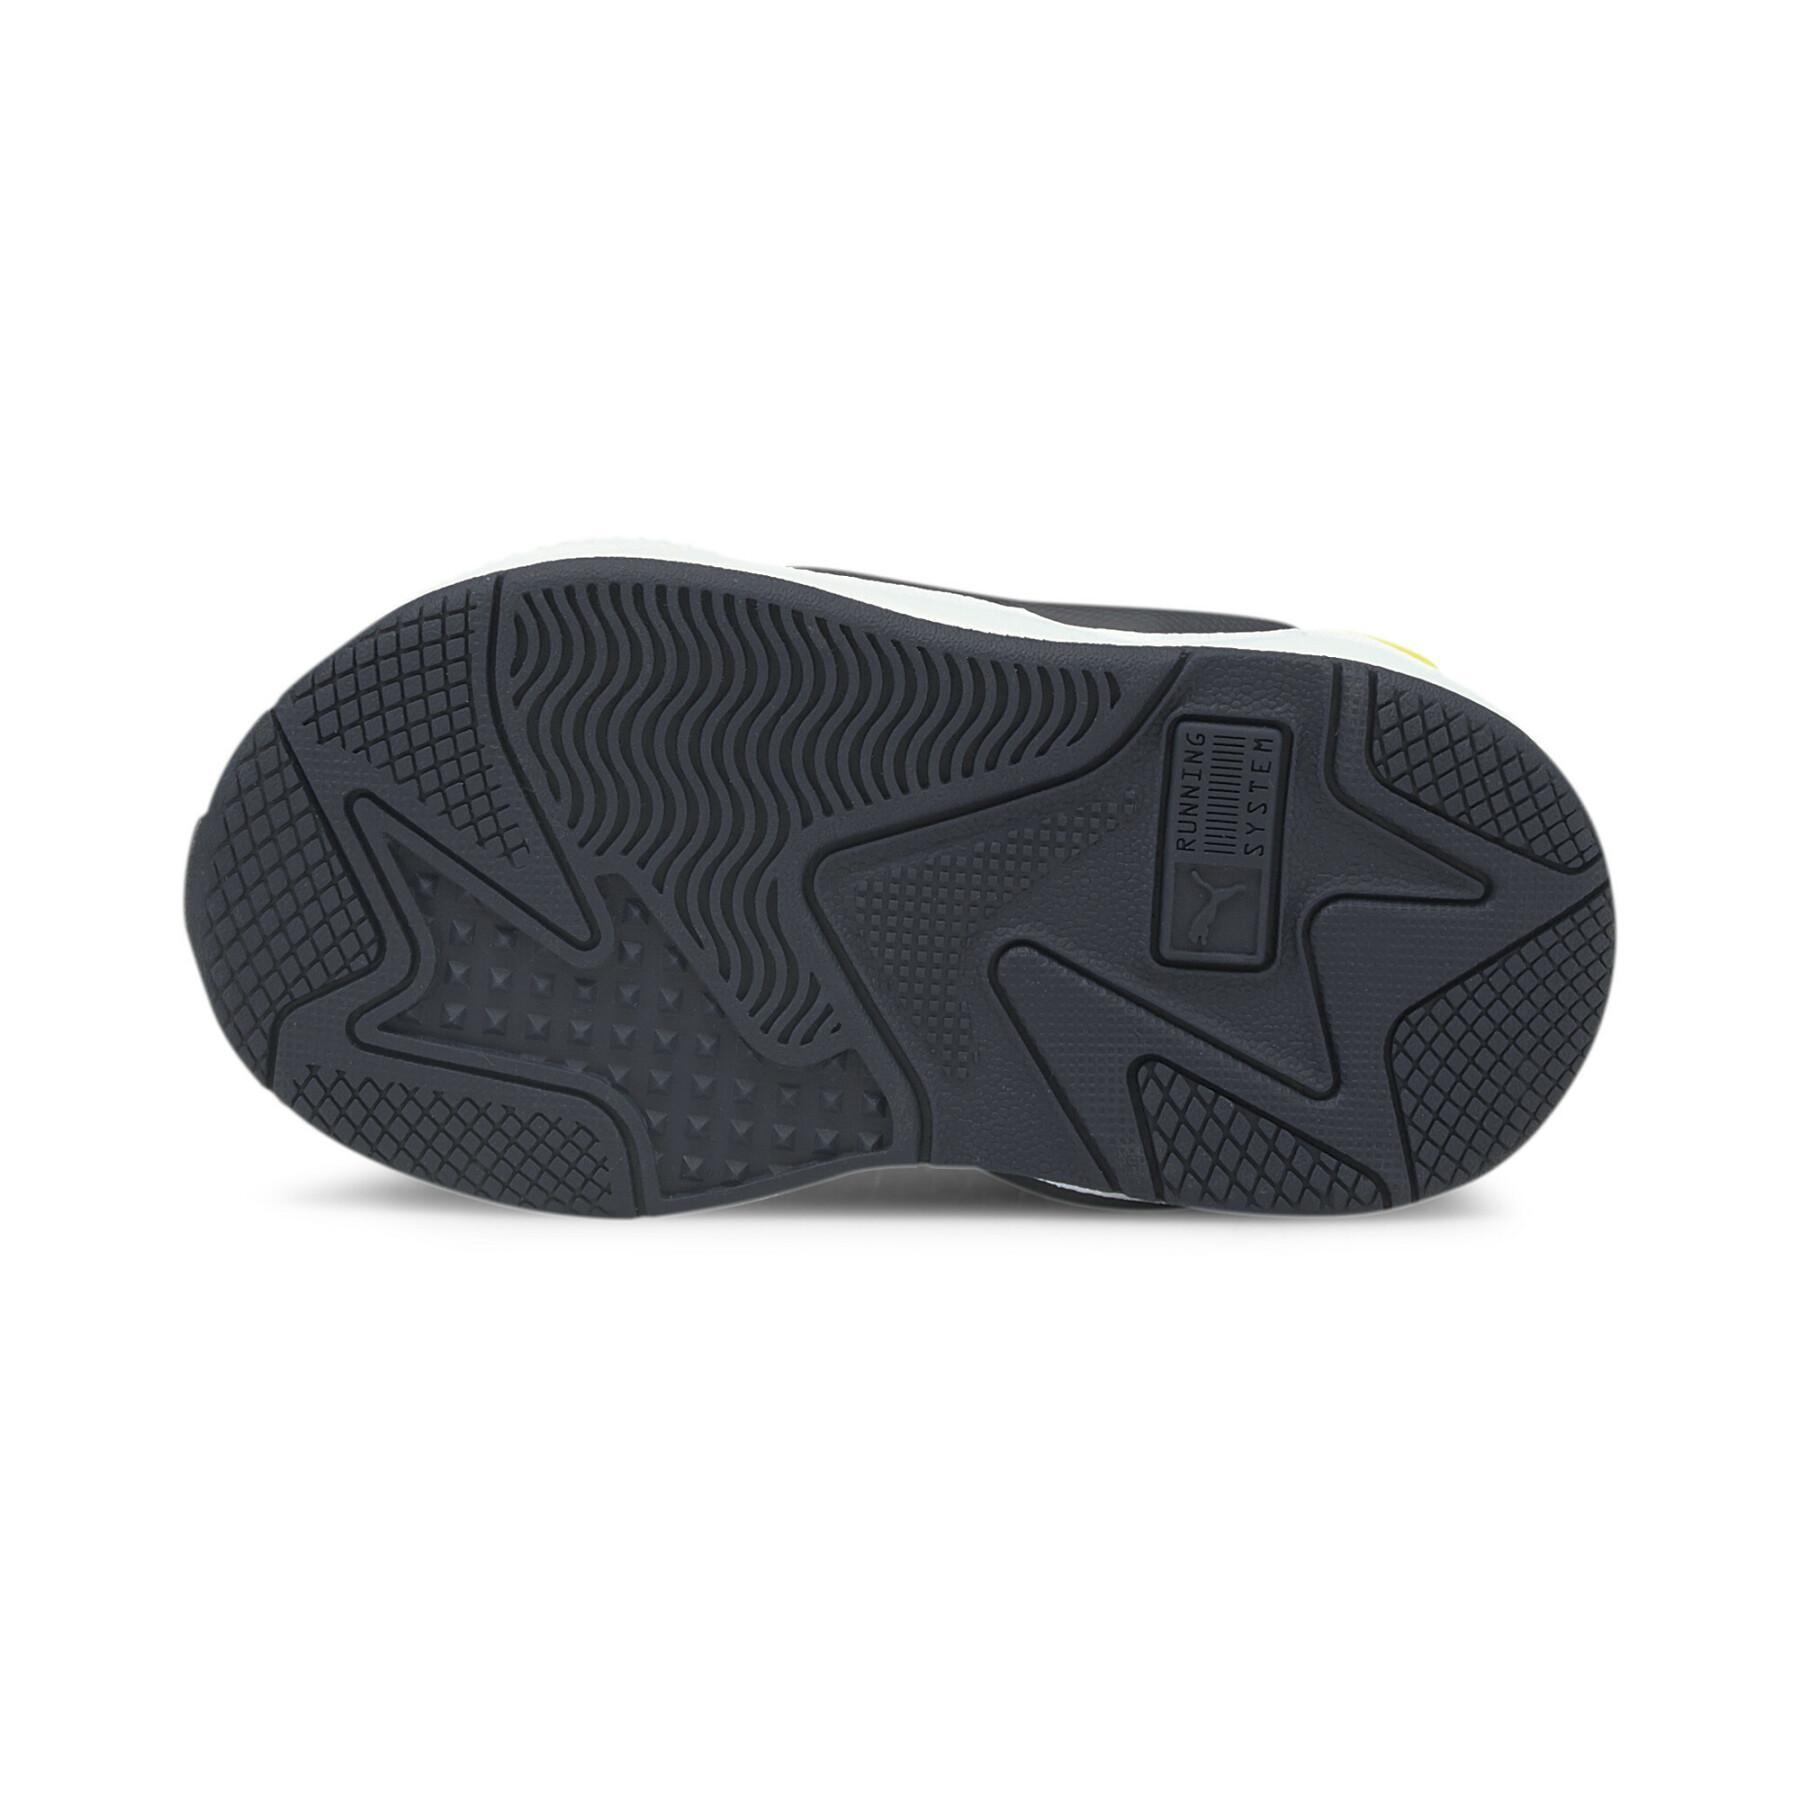 Zapatillas de deporte para niños Puma RS-X³ Twill AirMesh AC